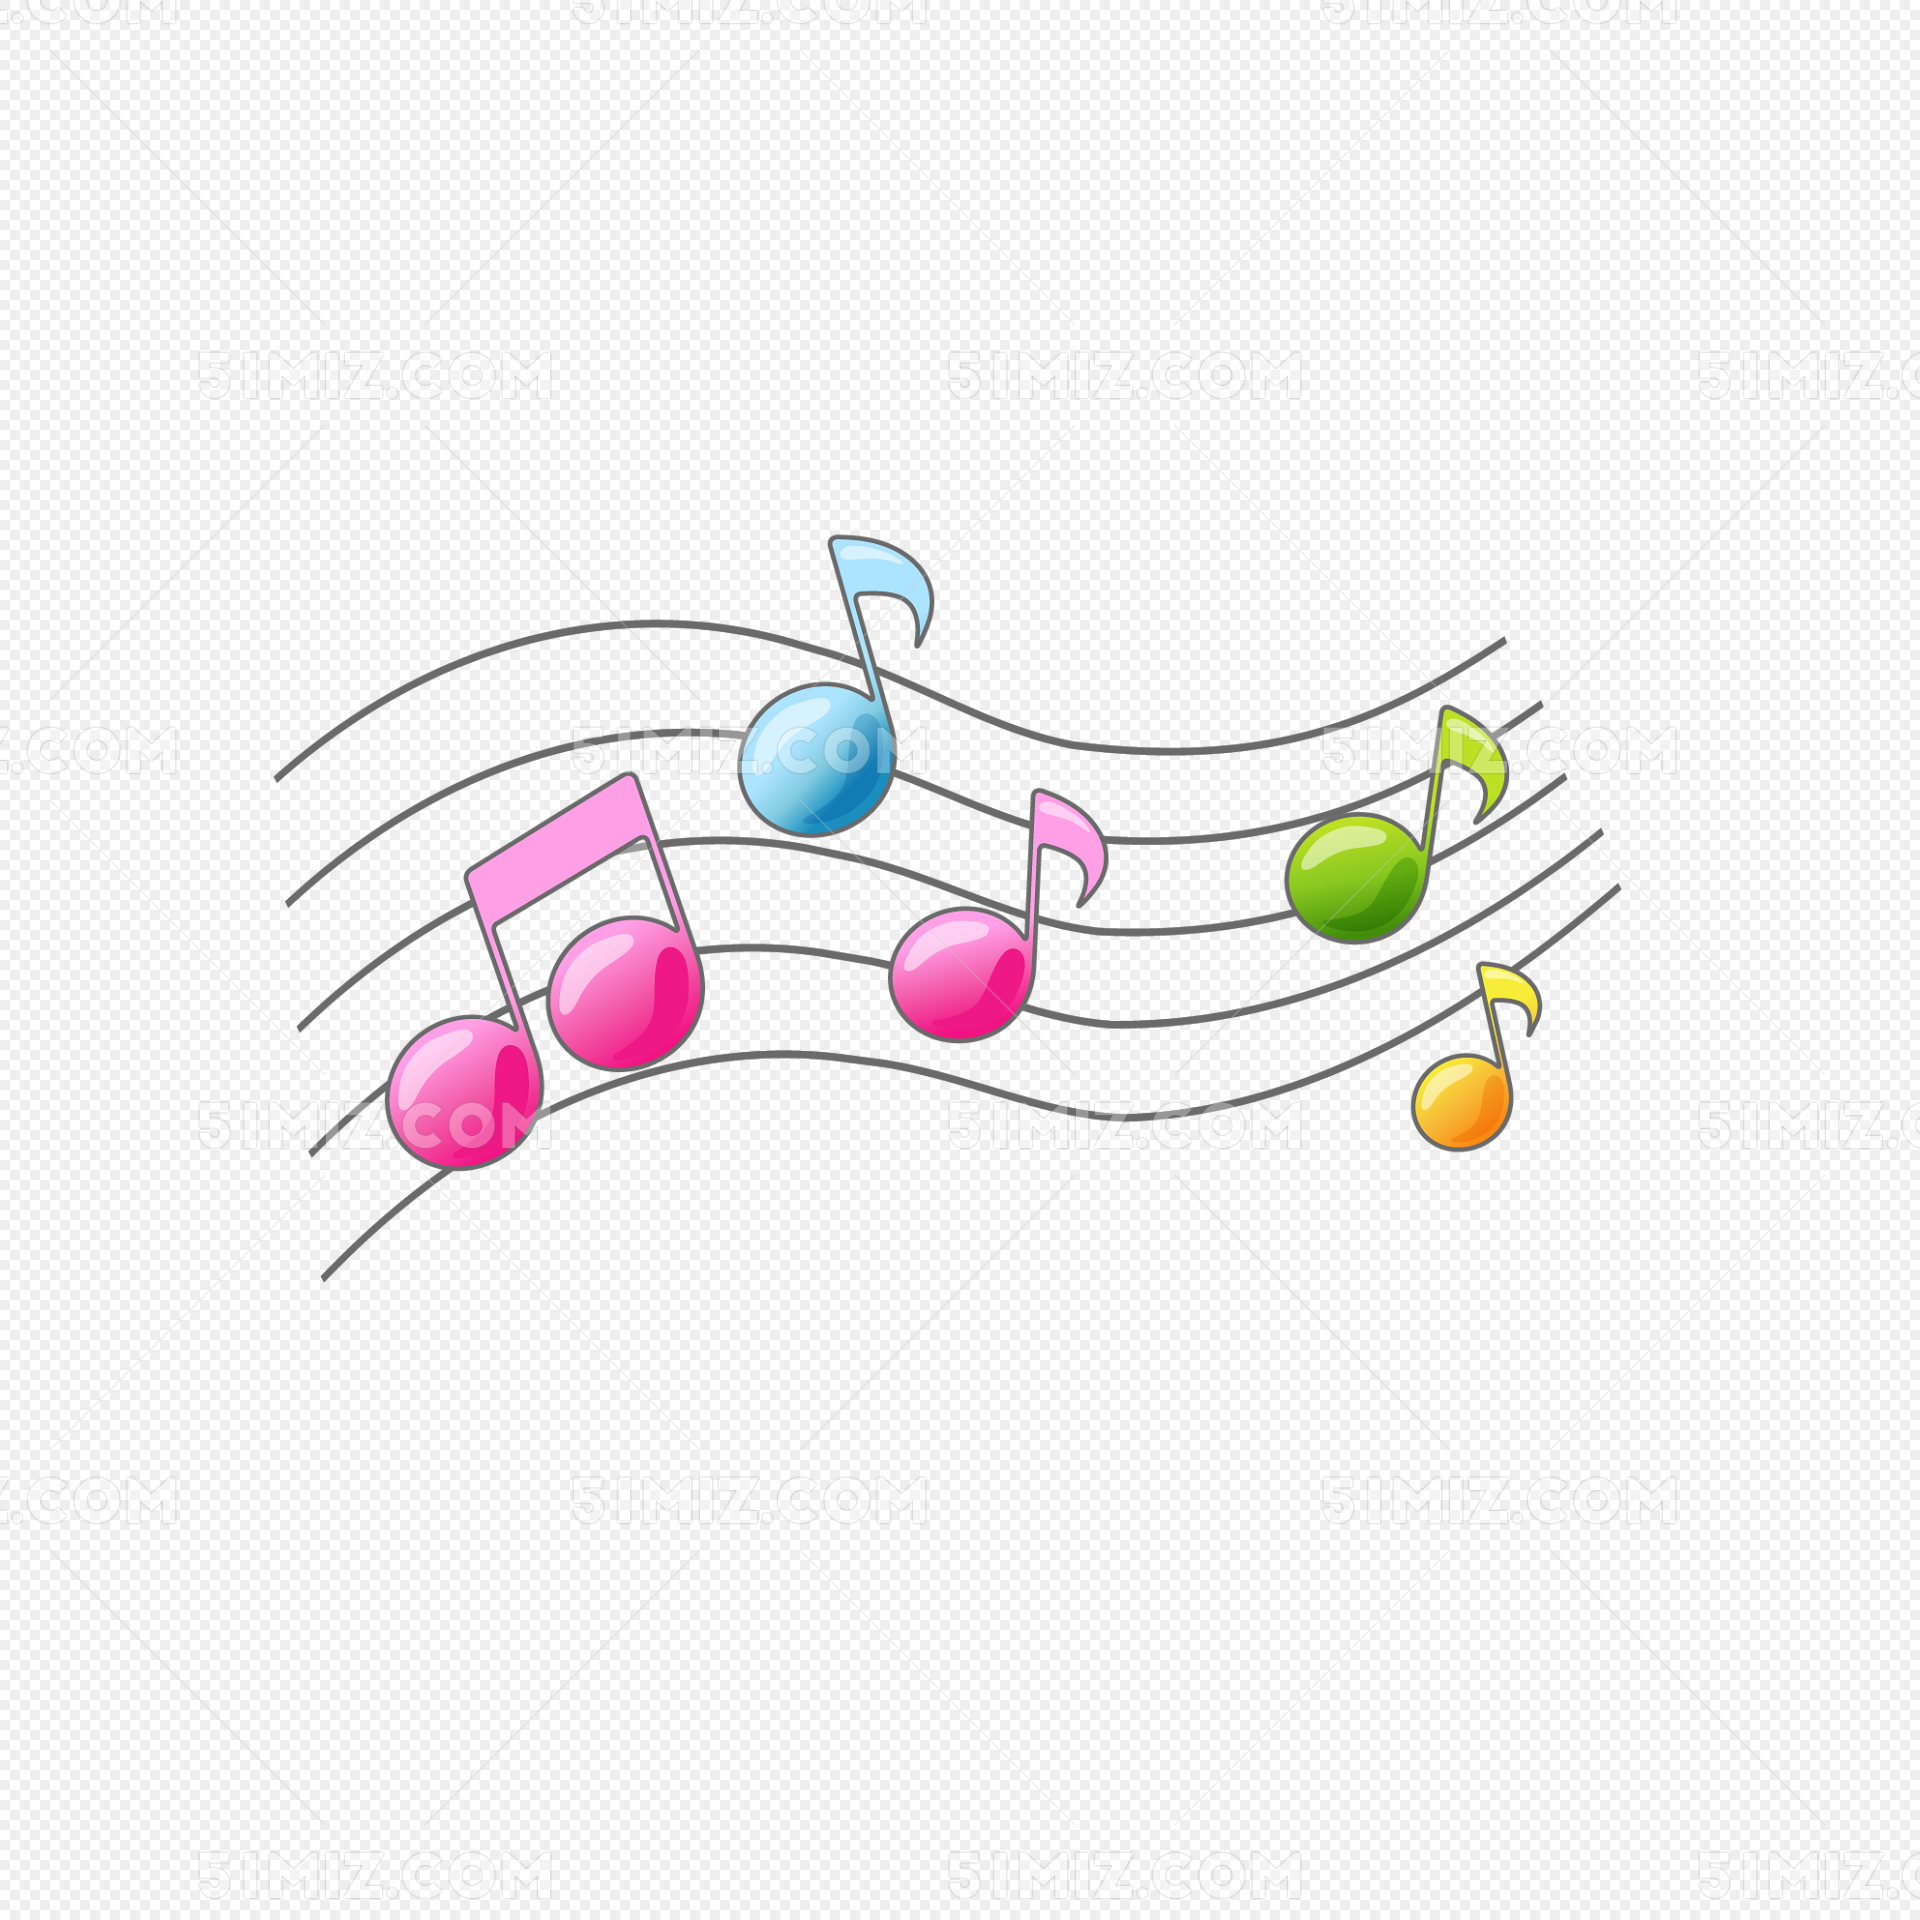 矢量音乐符号图片素材免费下载 - 觅知网